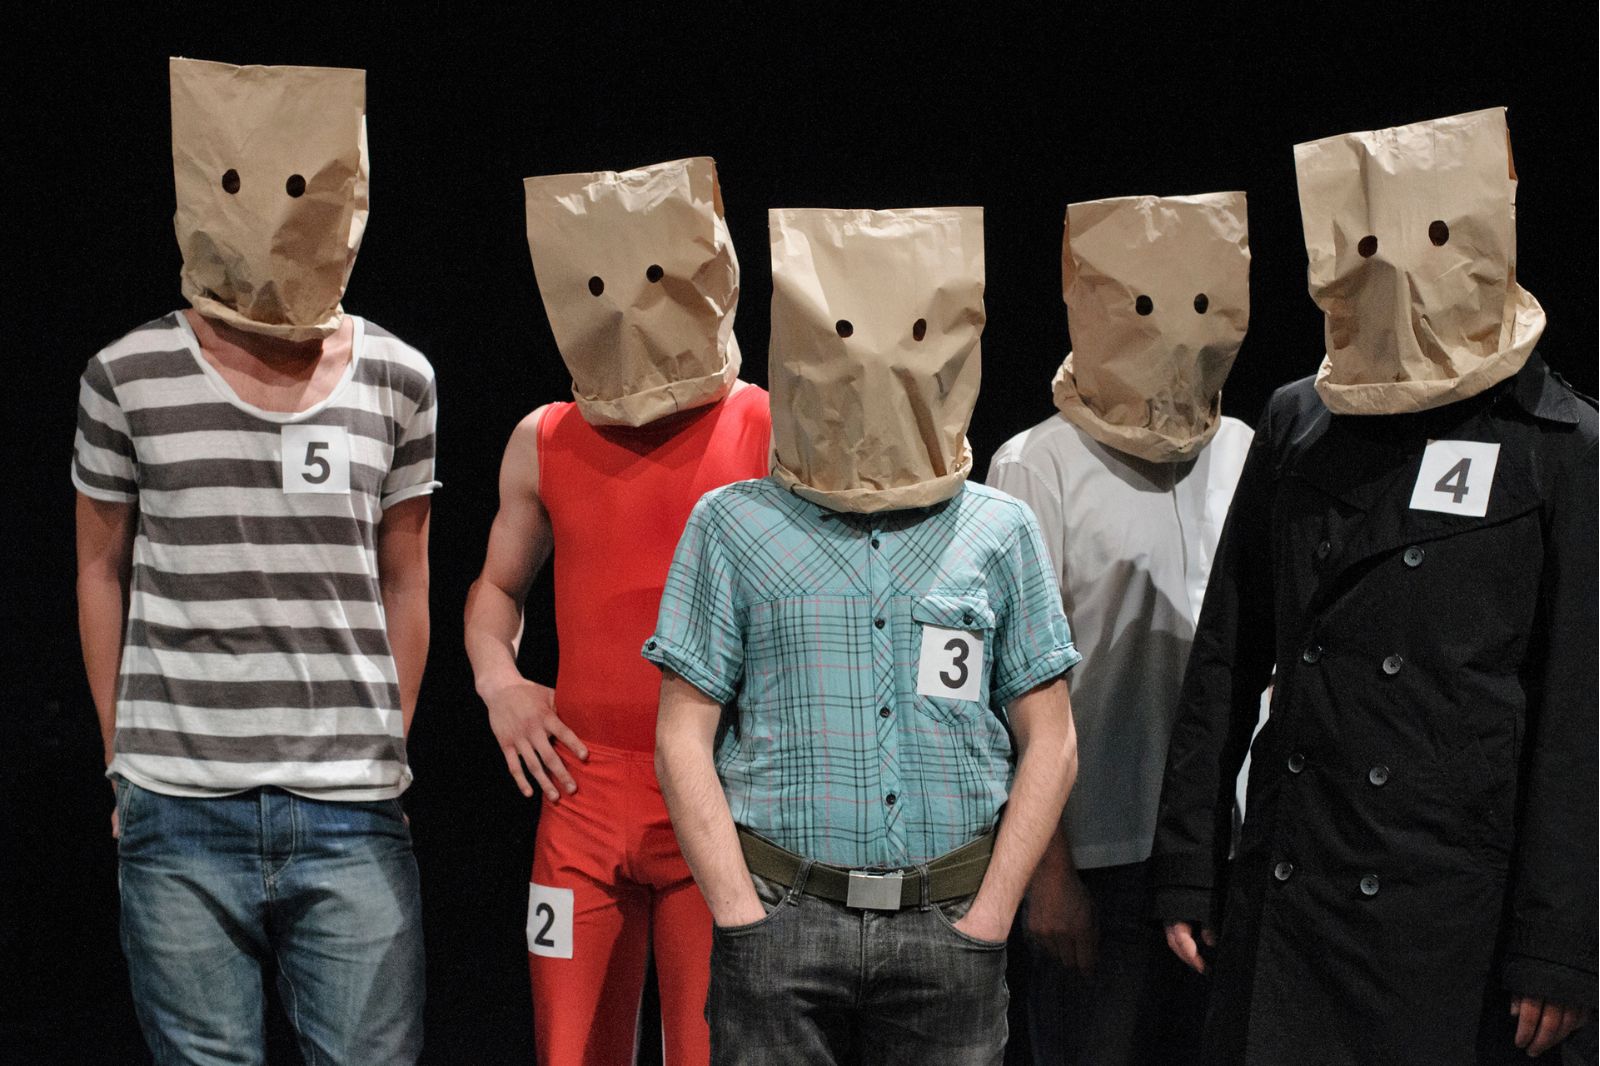 In foto, cinque uomini in riga portano sulla testa sacchetti di carta con buchi per gli occhi